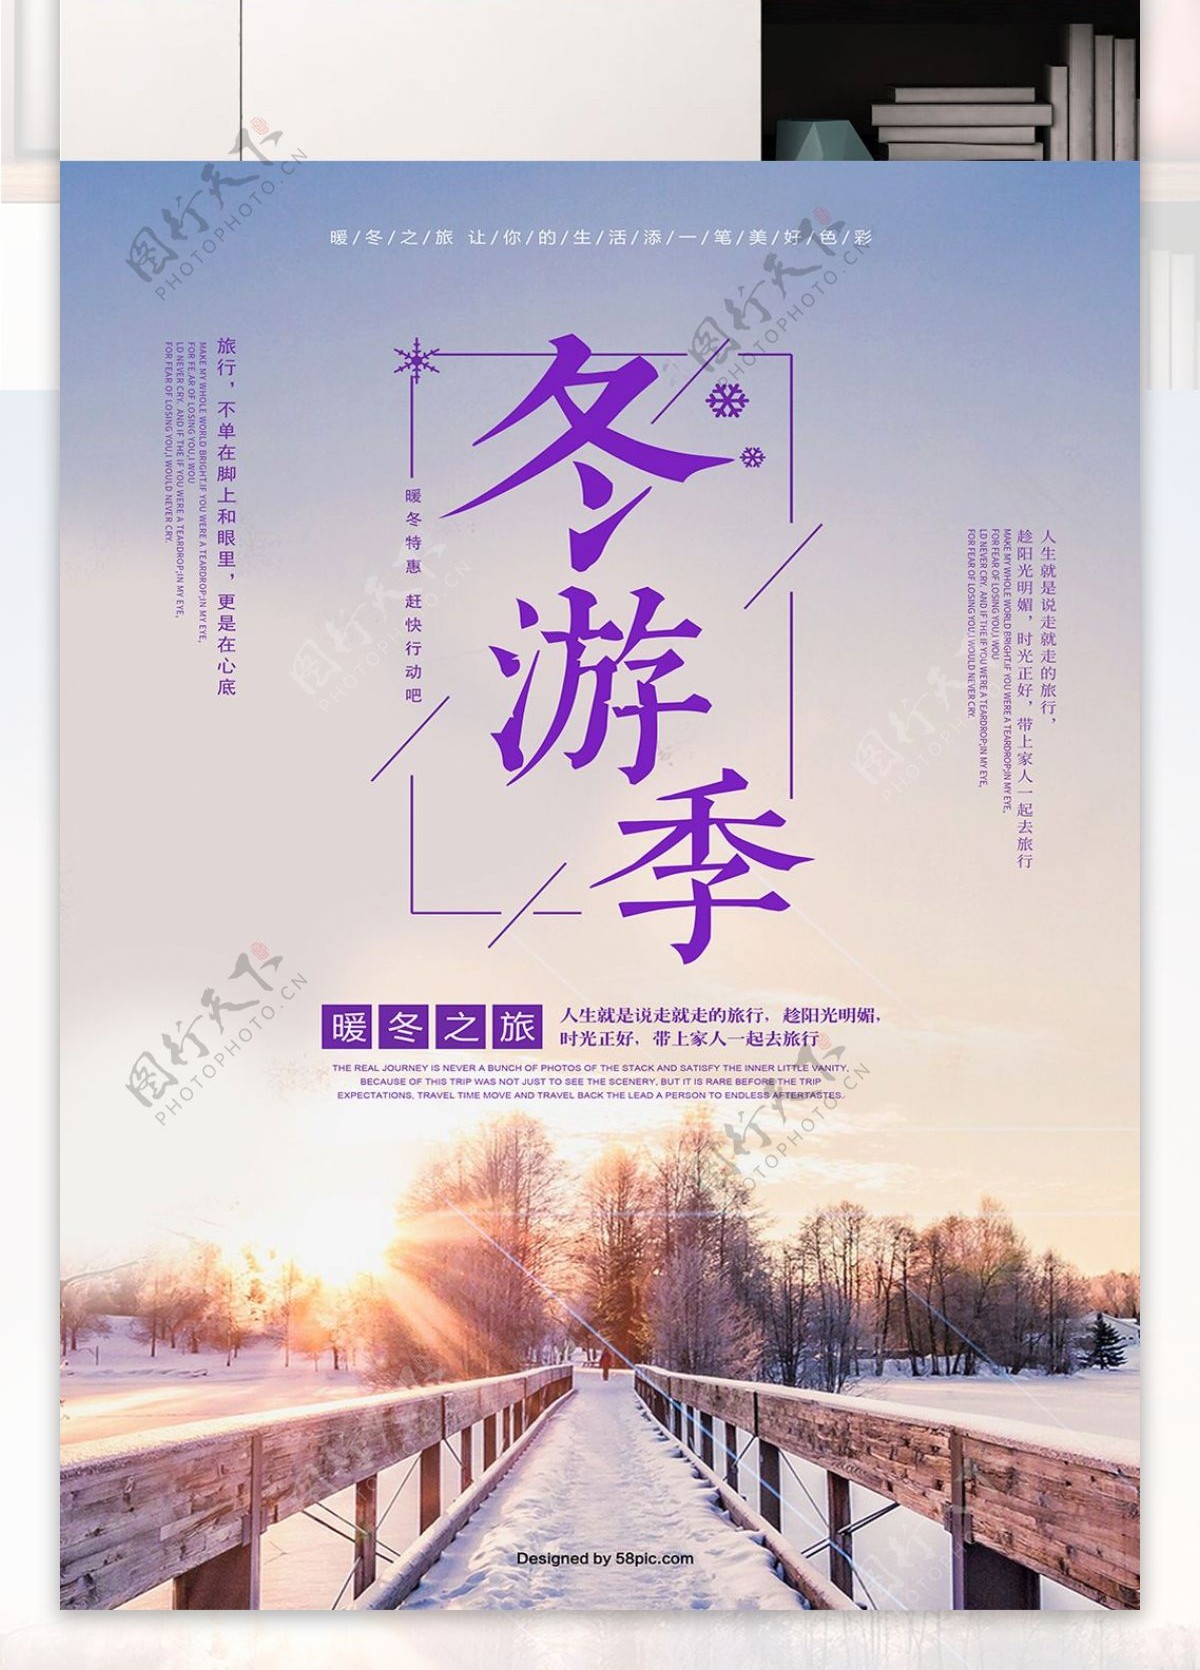 清新雪景冬季旅游海报psd模板